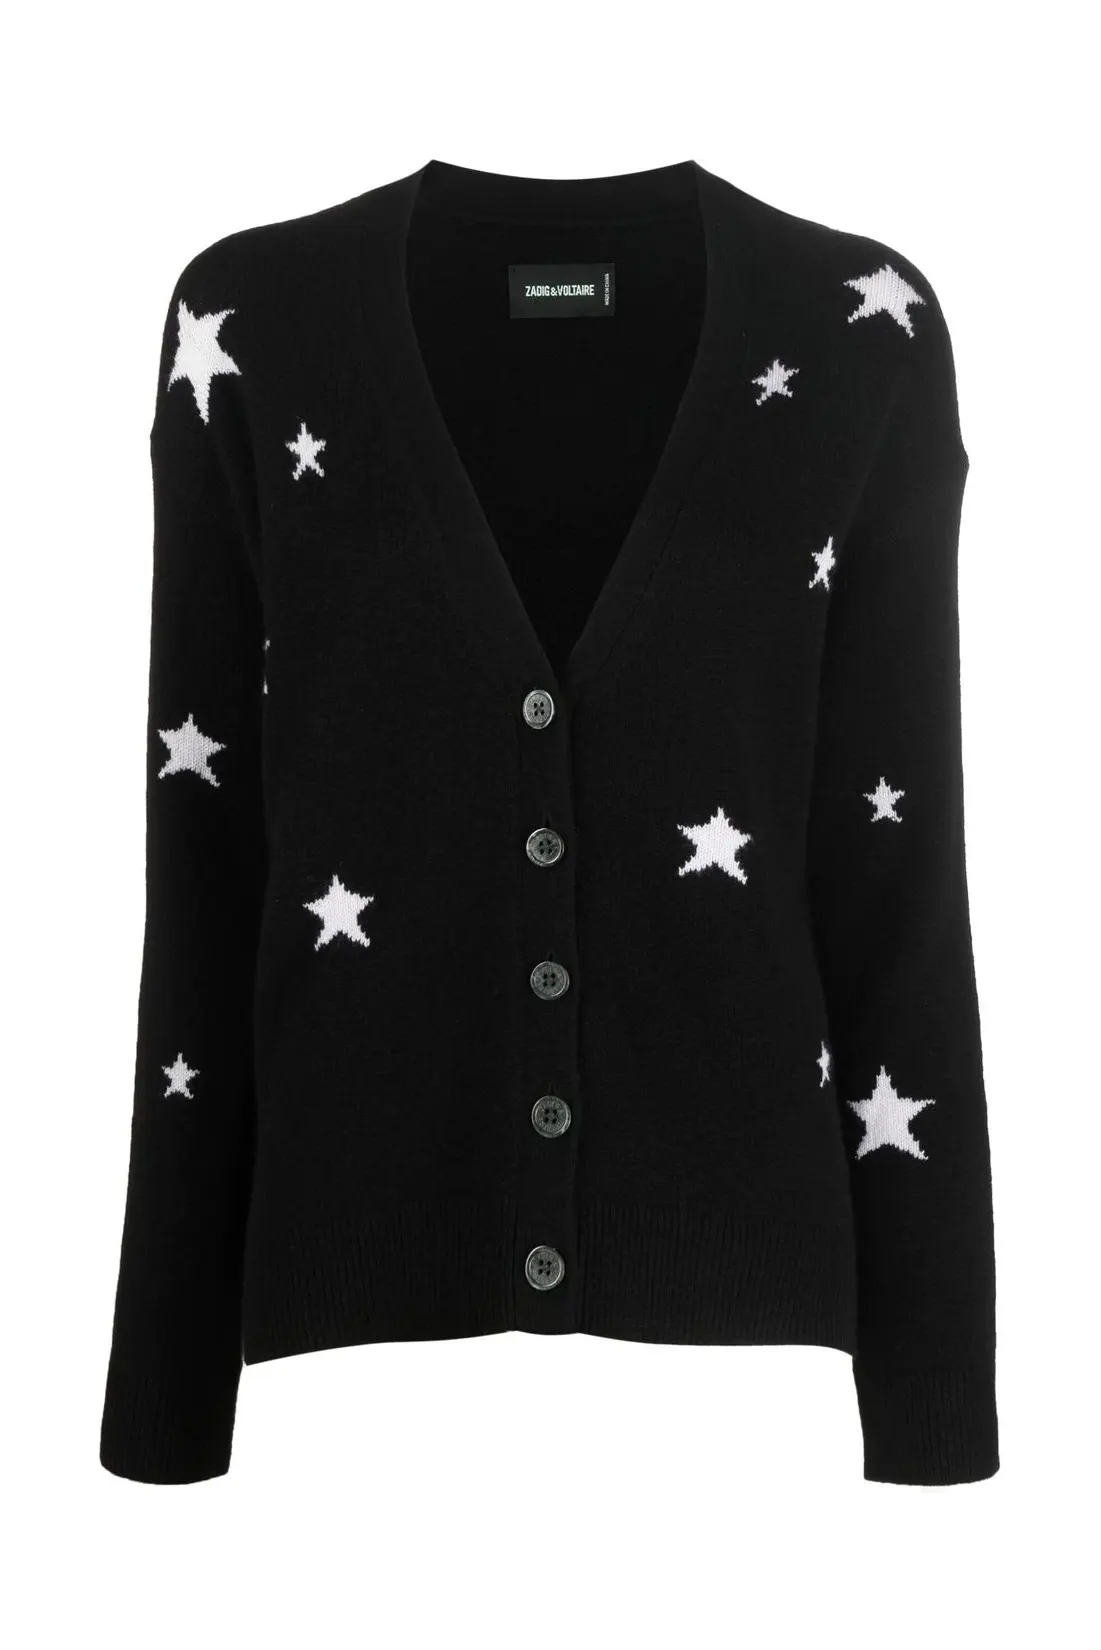 Mirka stars cashmere cardigan, black